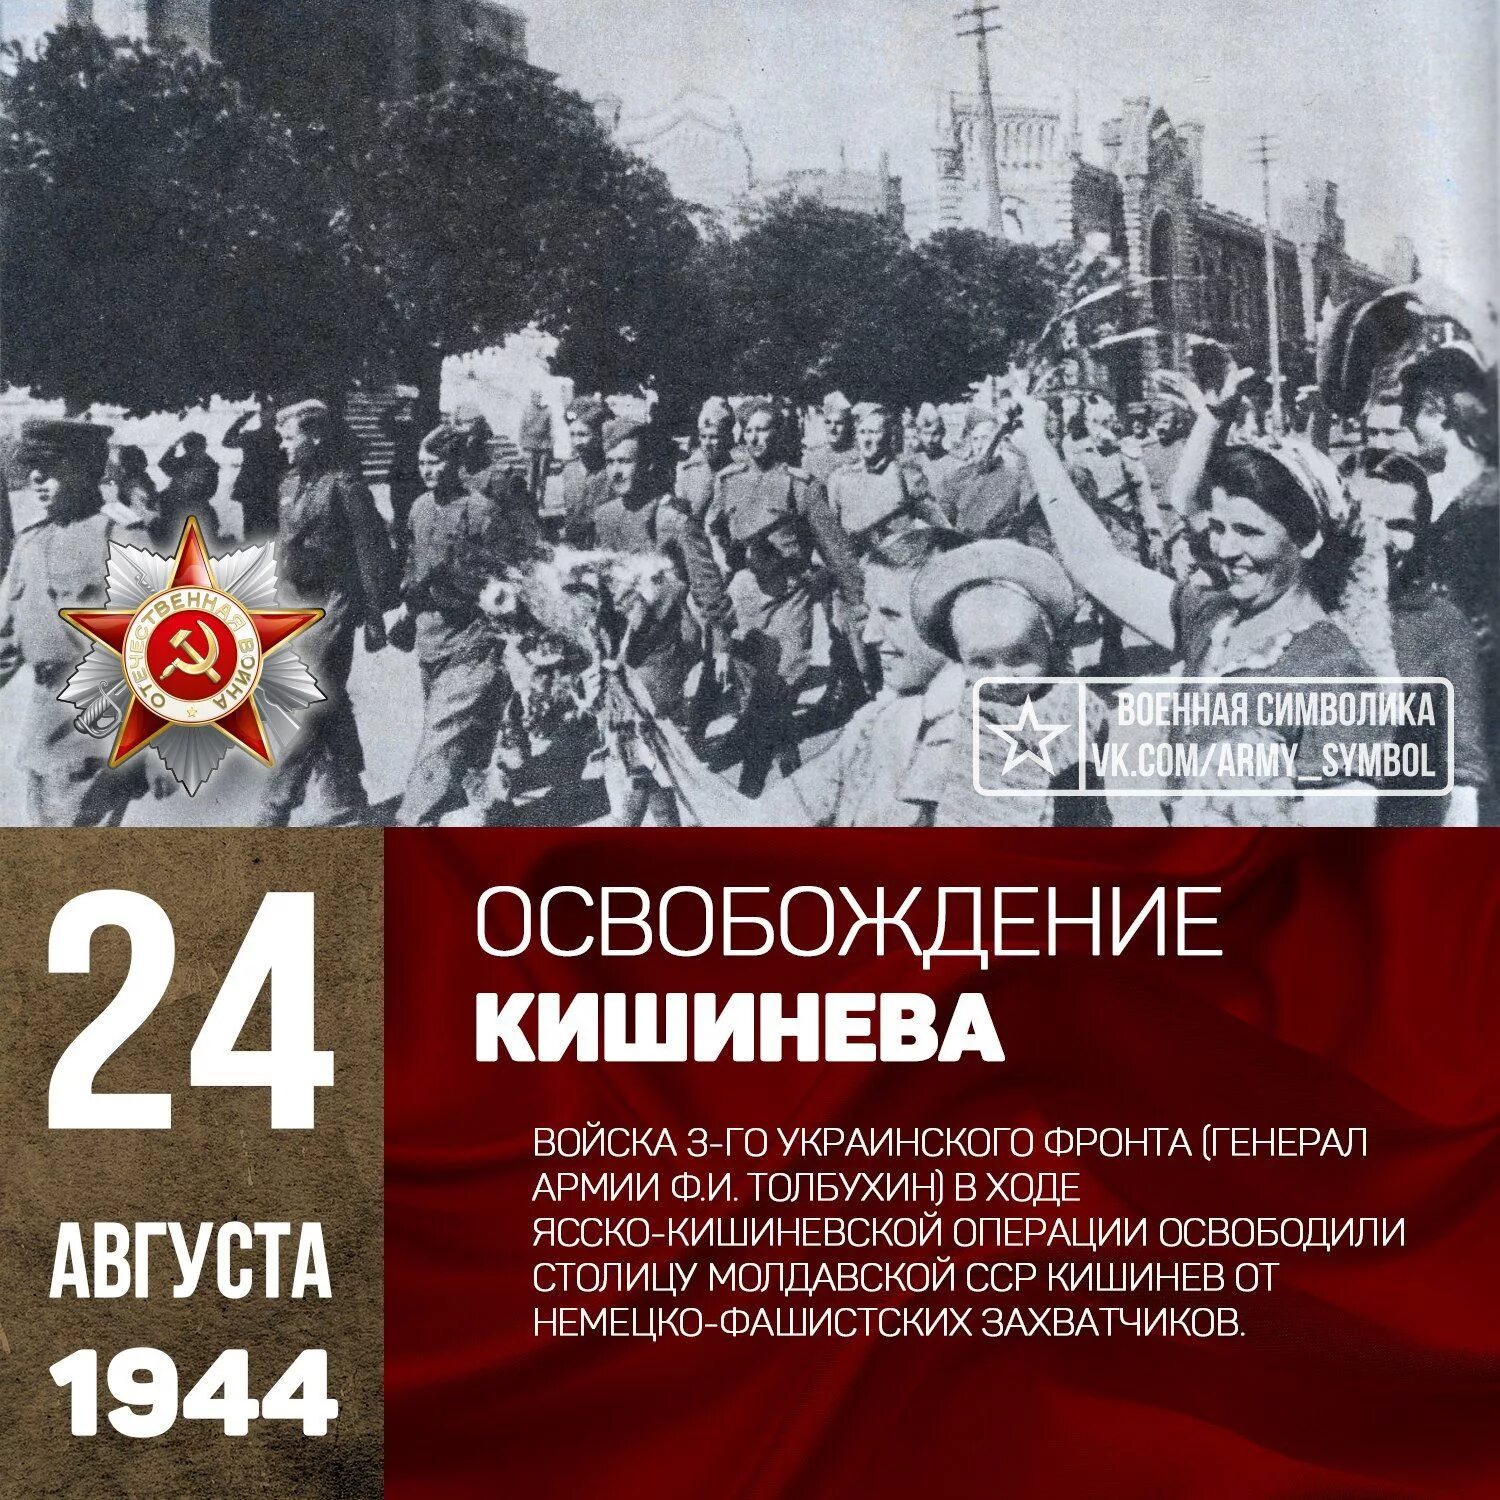 24 Августа 1944 года освобождение Кишинева. Освобождение столицы Молдавии Кишинева. 1944 - День освобождения Молдавии от фашистской оккупации.. 24 Августа день освобождения Кишинева. Пам дат